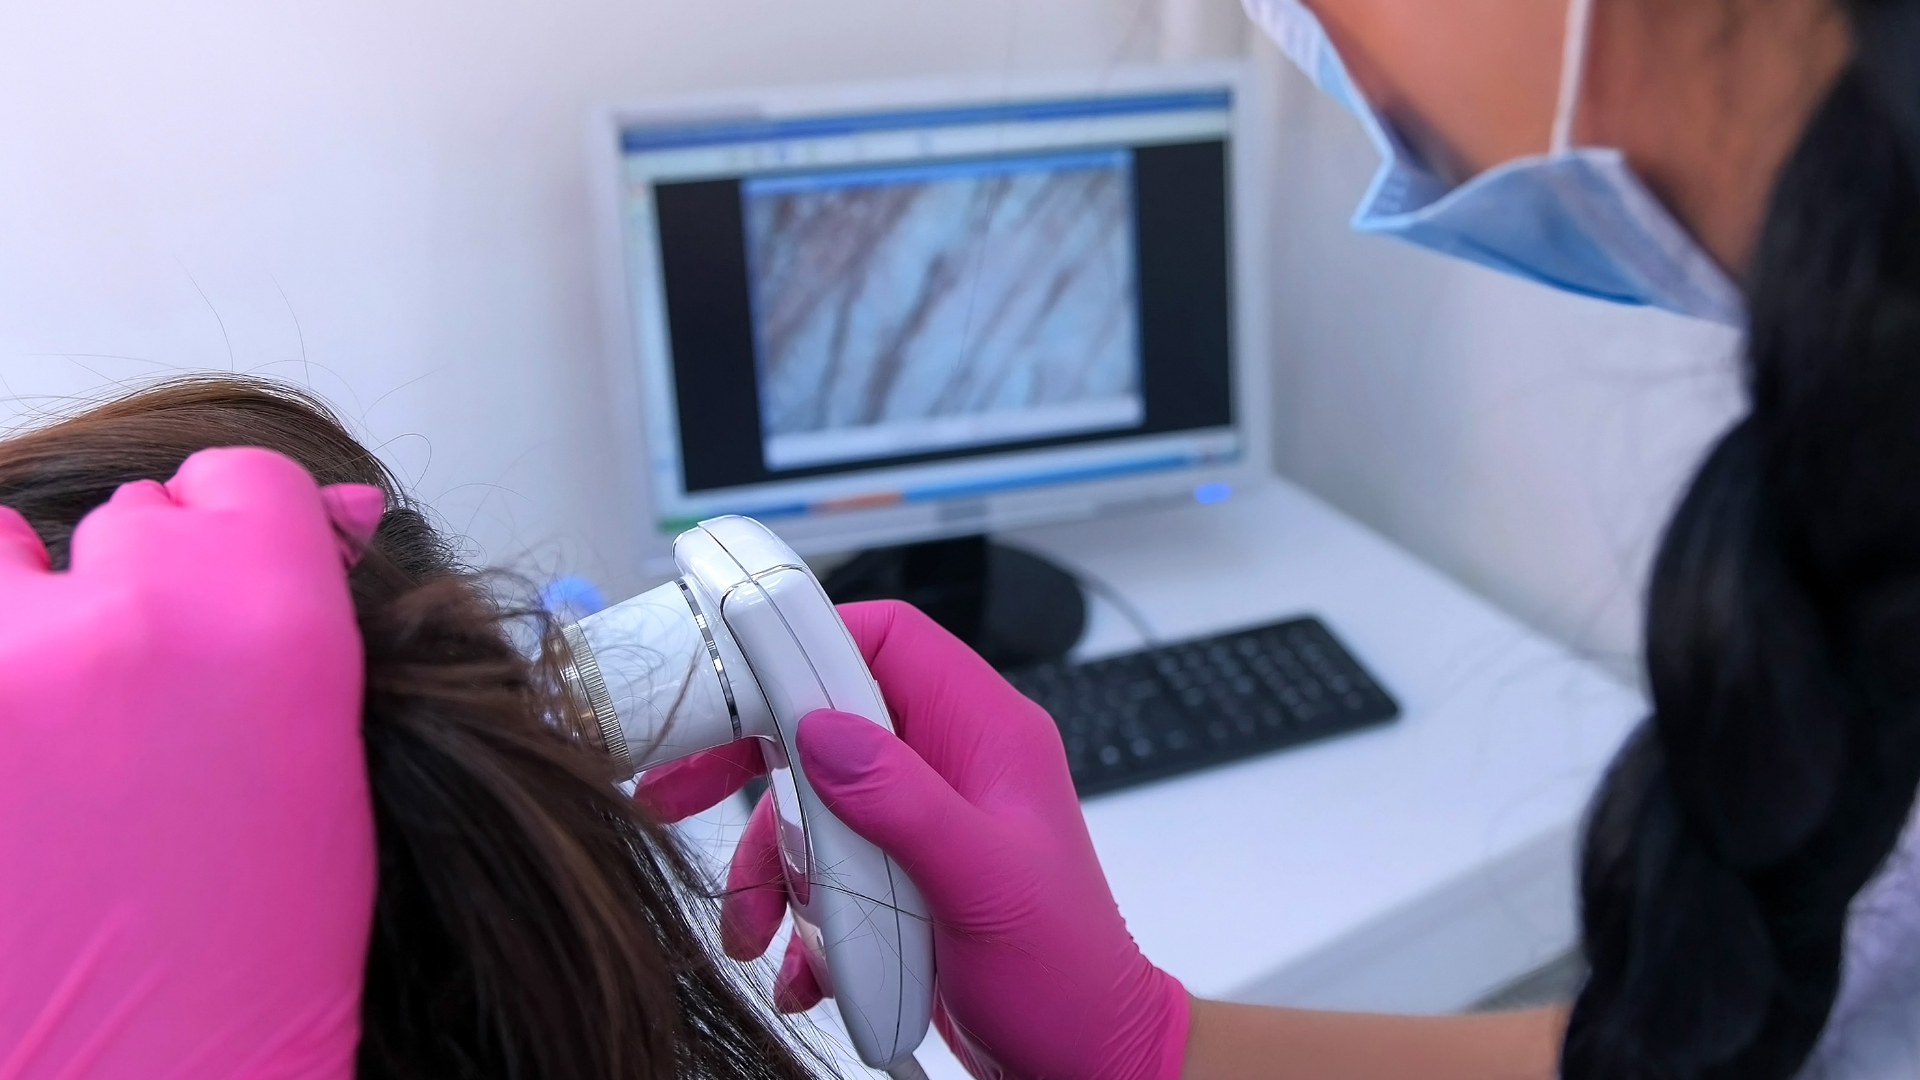 L'analyse du cuir chevelu du patient dans le cadre d'une mesothérapie capillaire